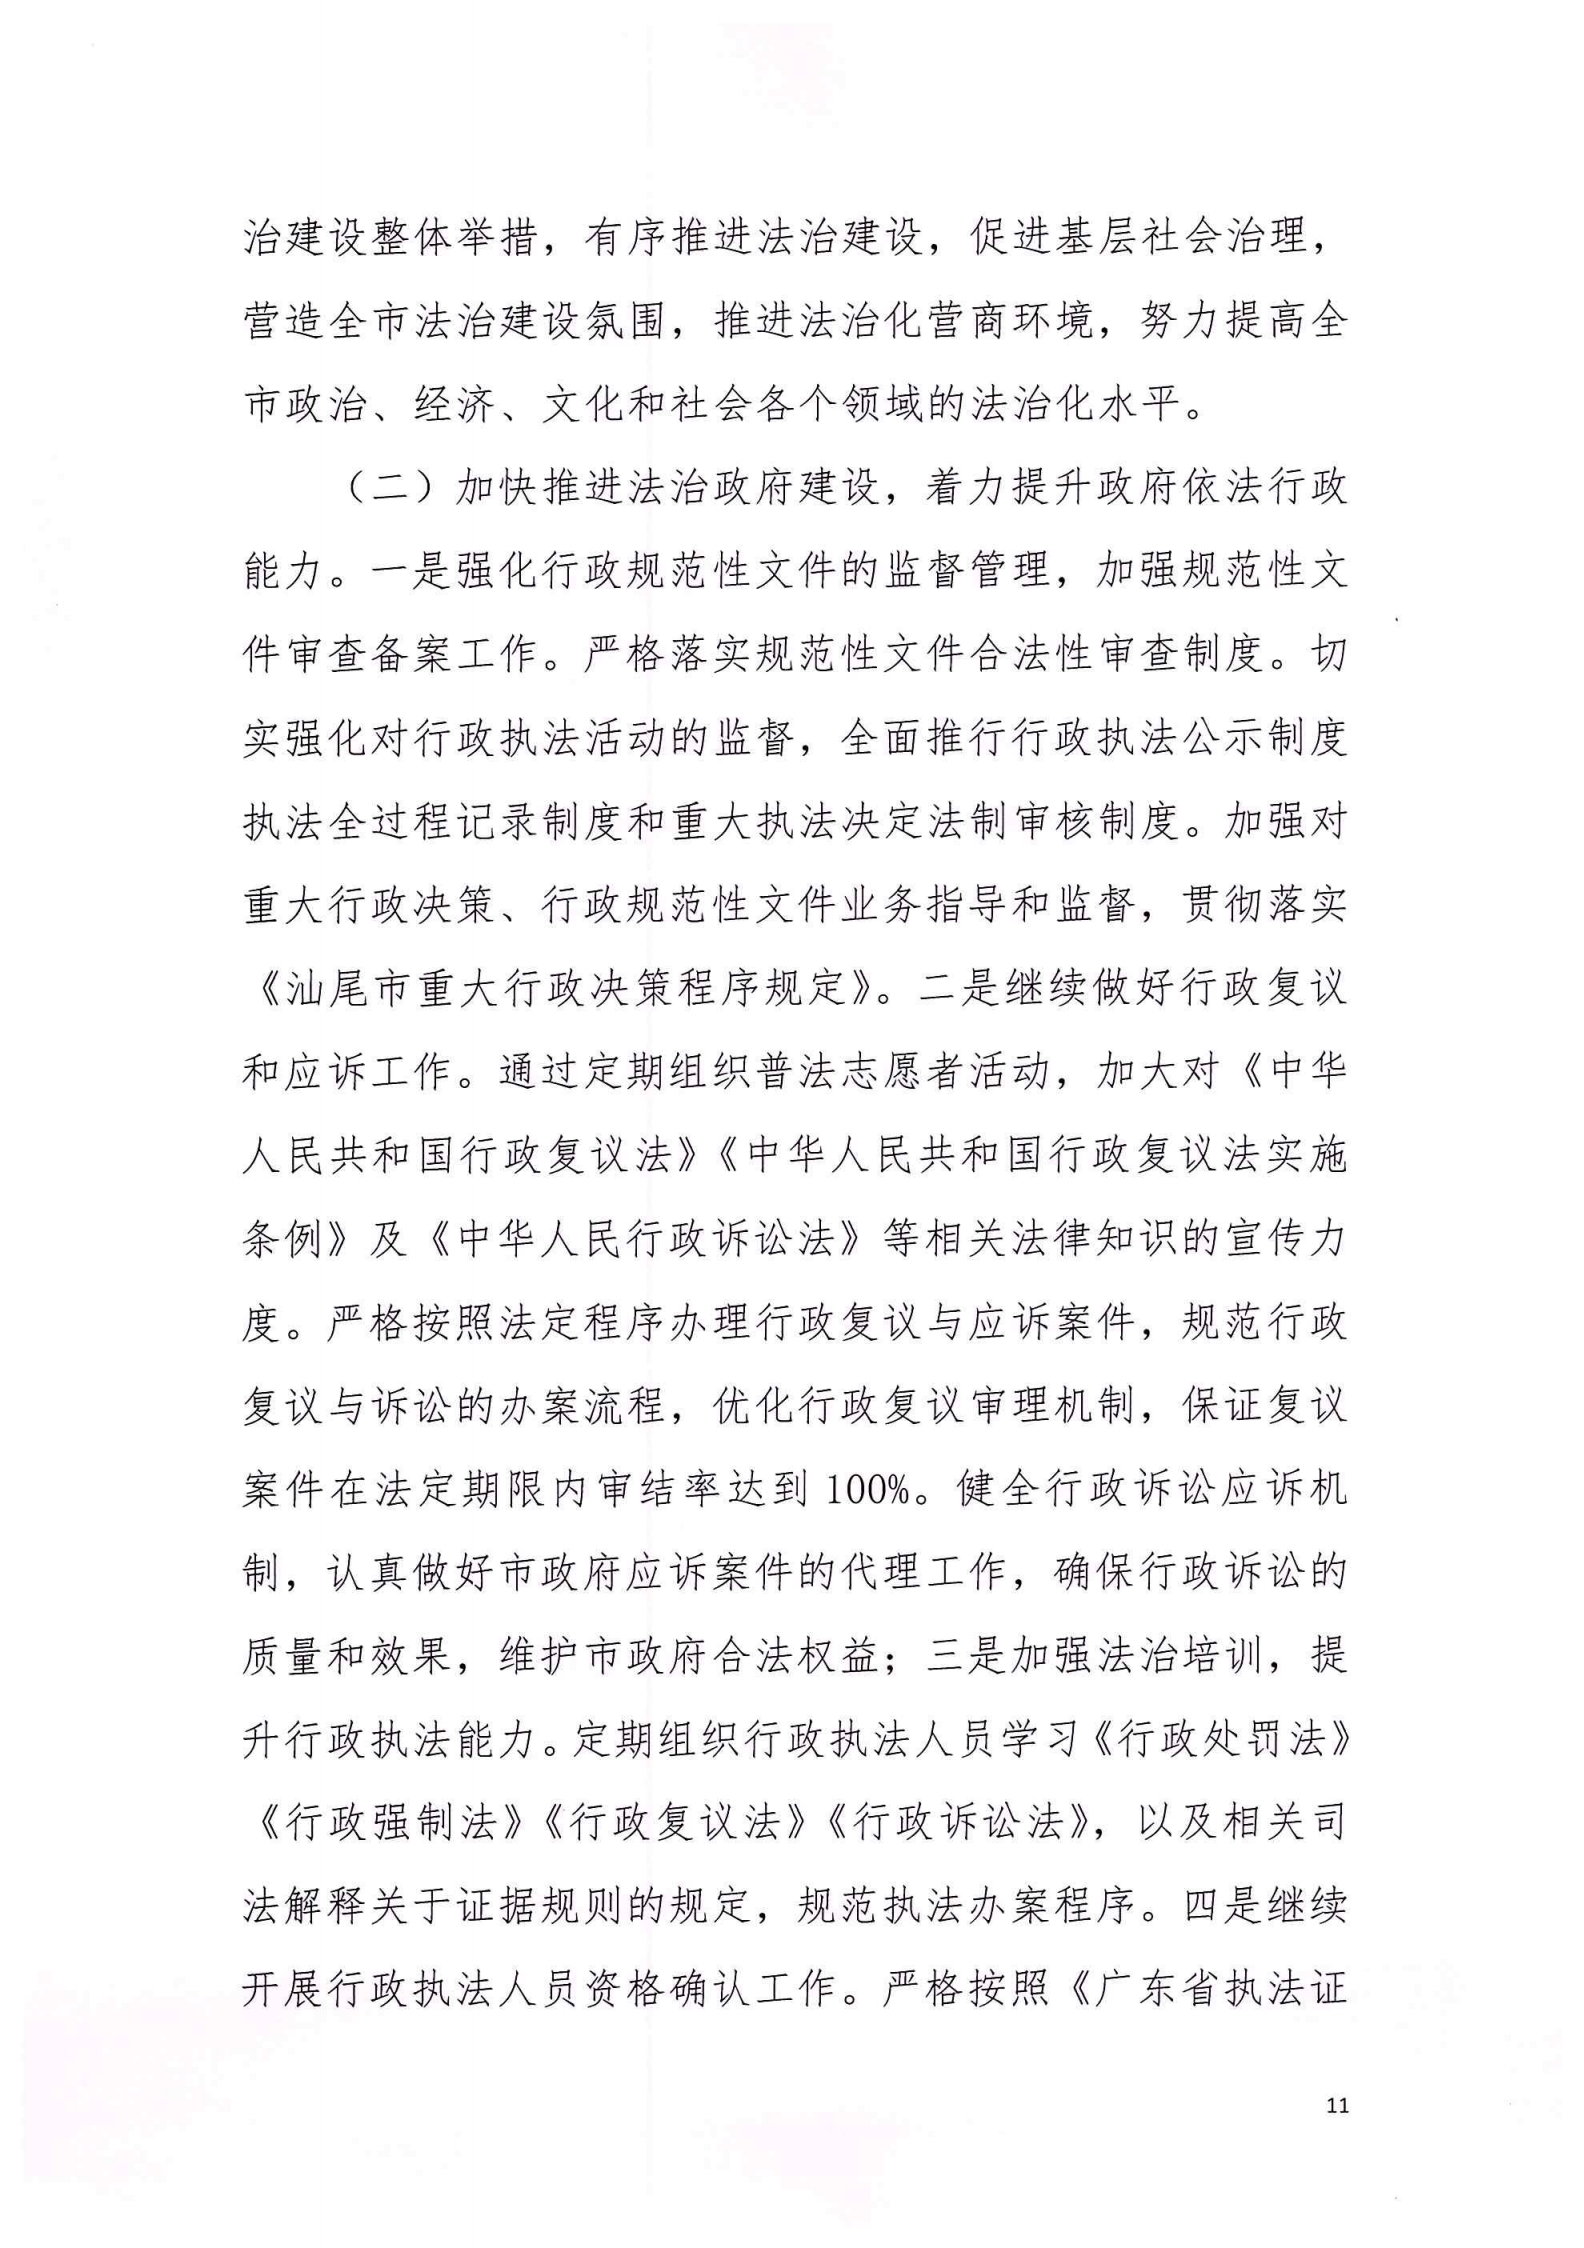 陆丰市司法局2020年法治政府建设年度报告_10.png